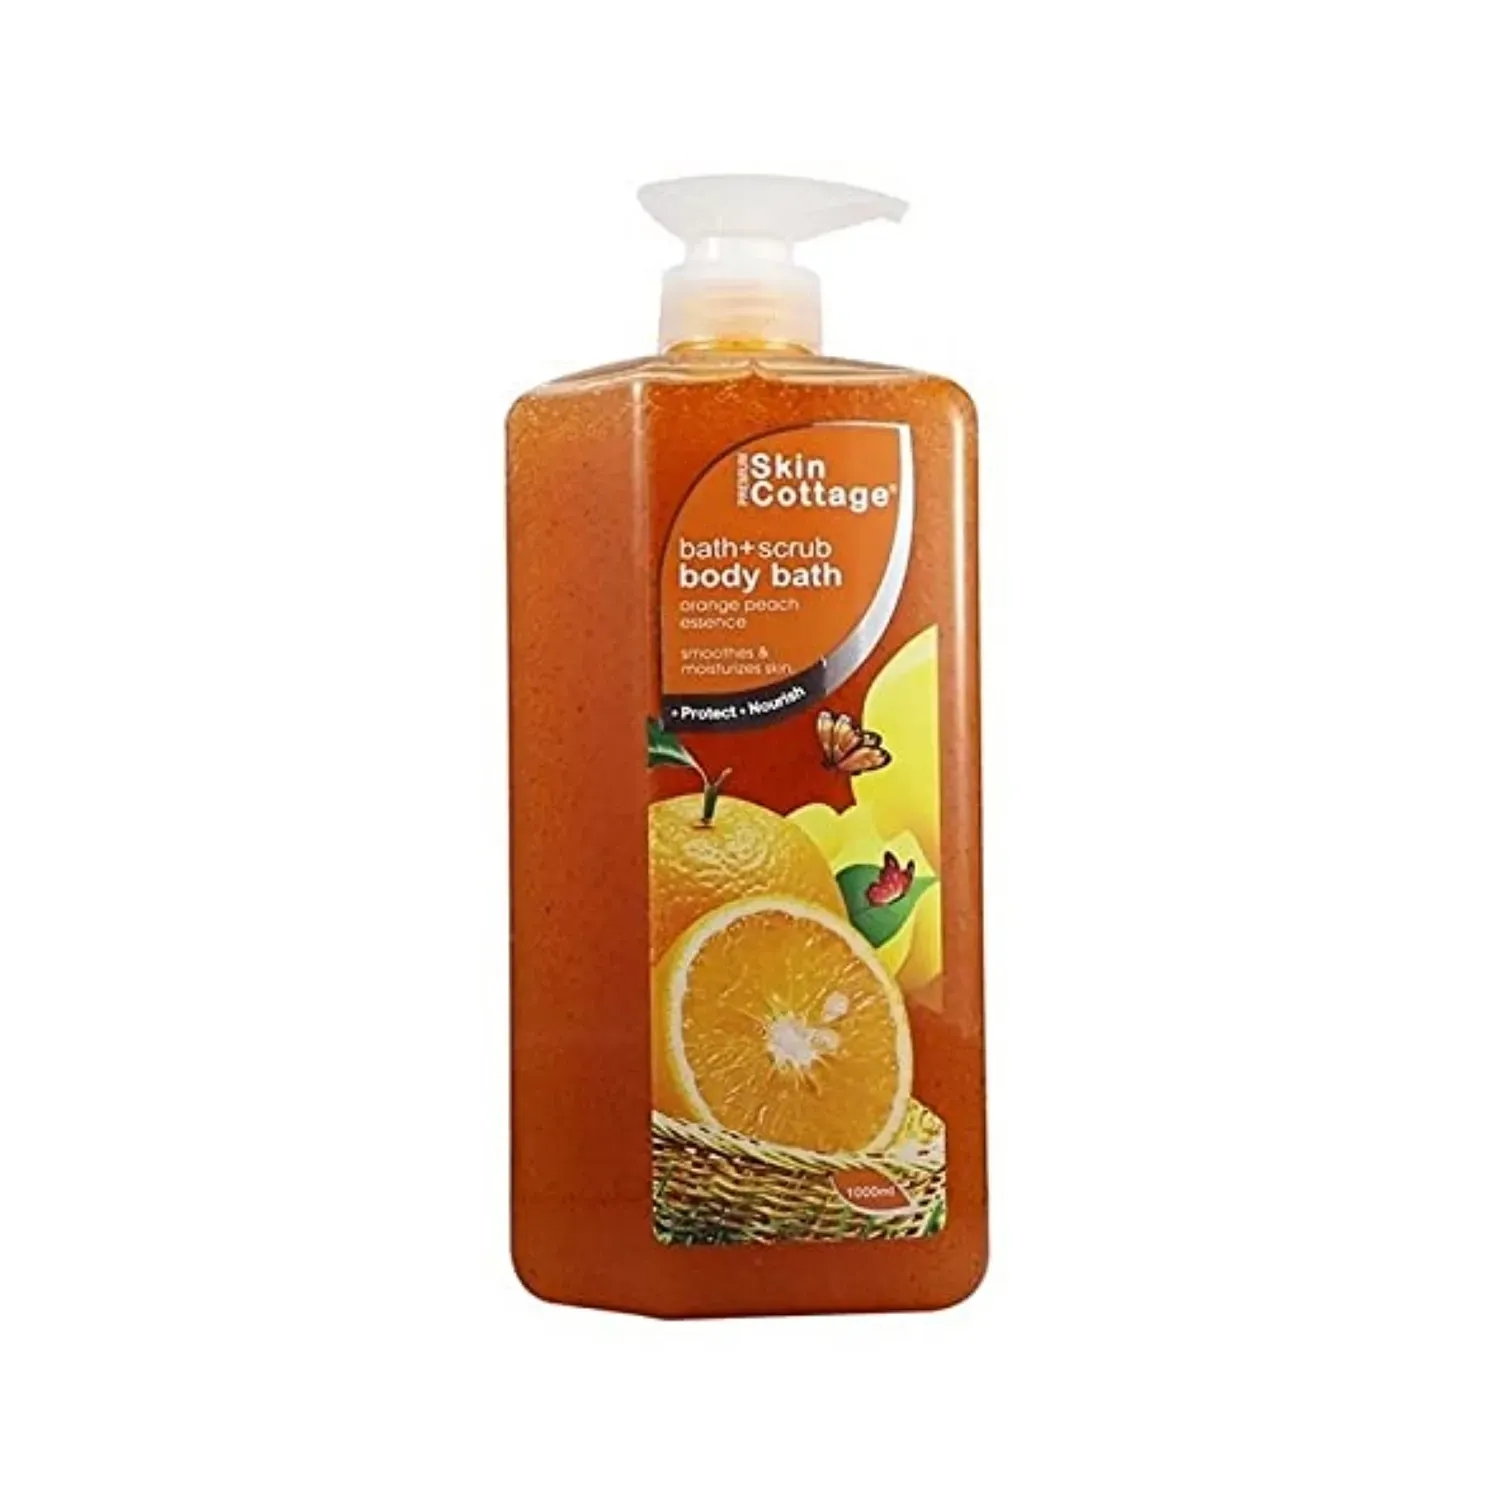 SKIN COTTAGE Orange Peach Body Bath + Scrub (1000ml)